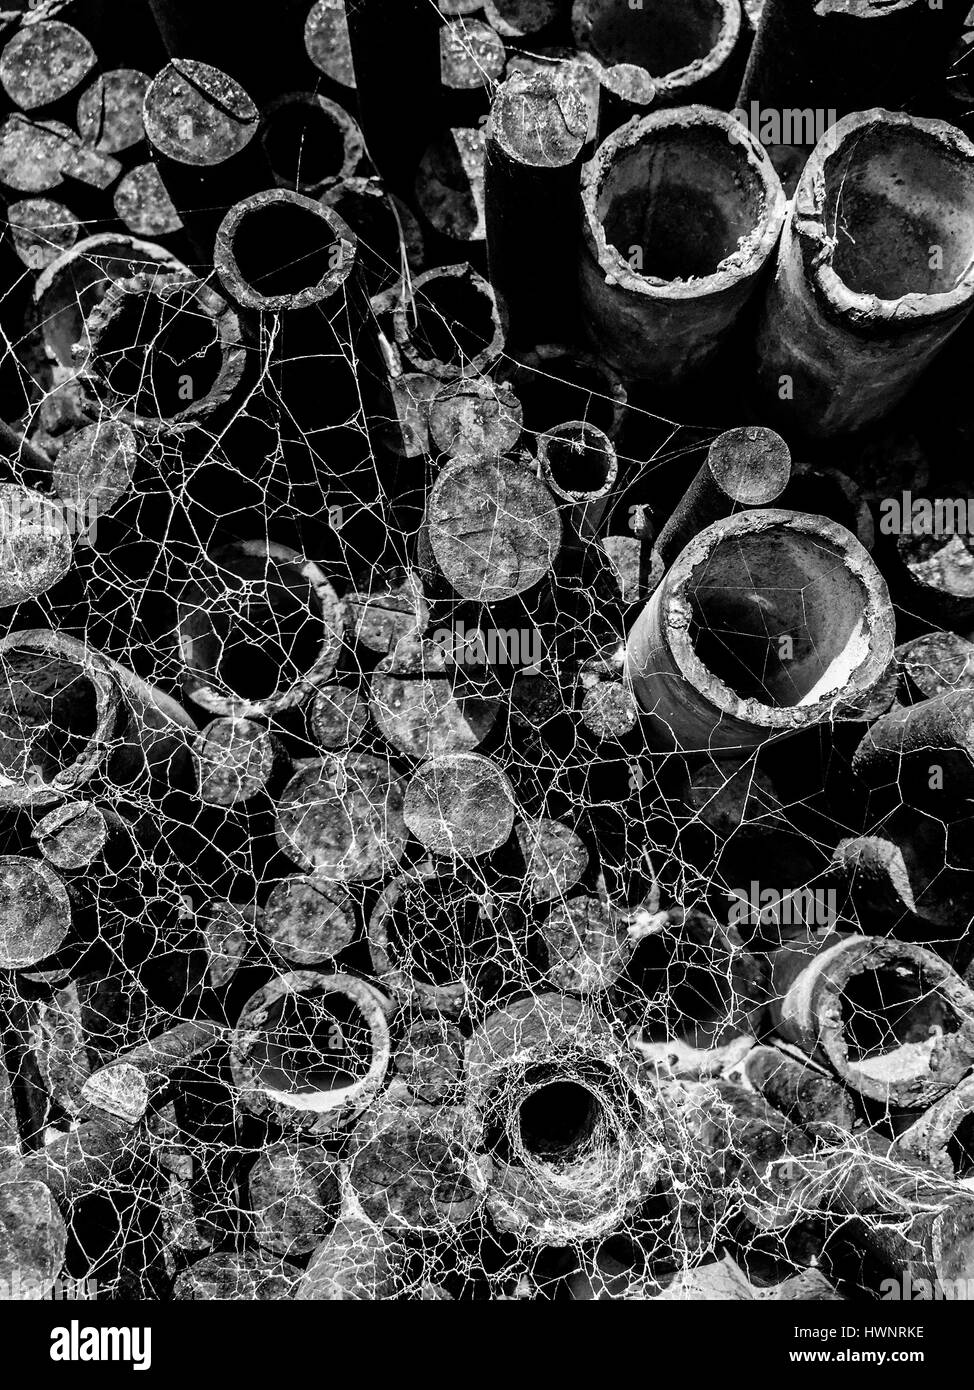 Vieux tuyaux rouillés recouverts d'araignée. Verticale de l'image noir et blanc Banque D'Images